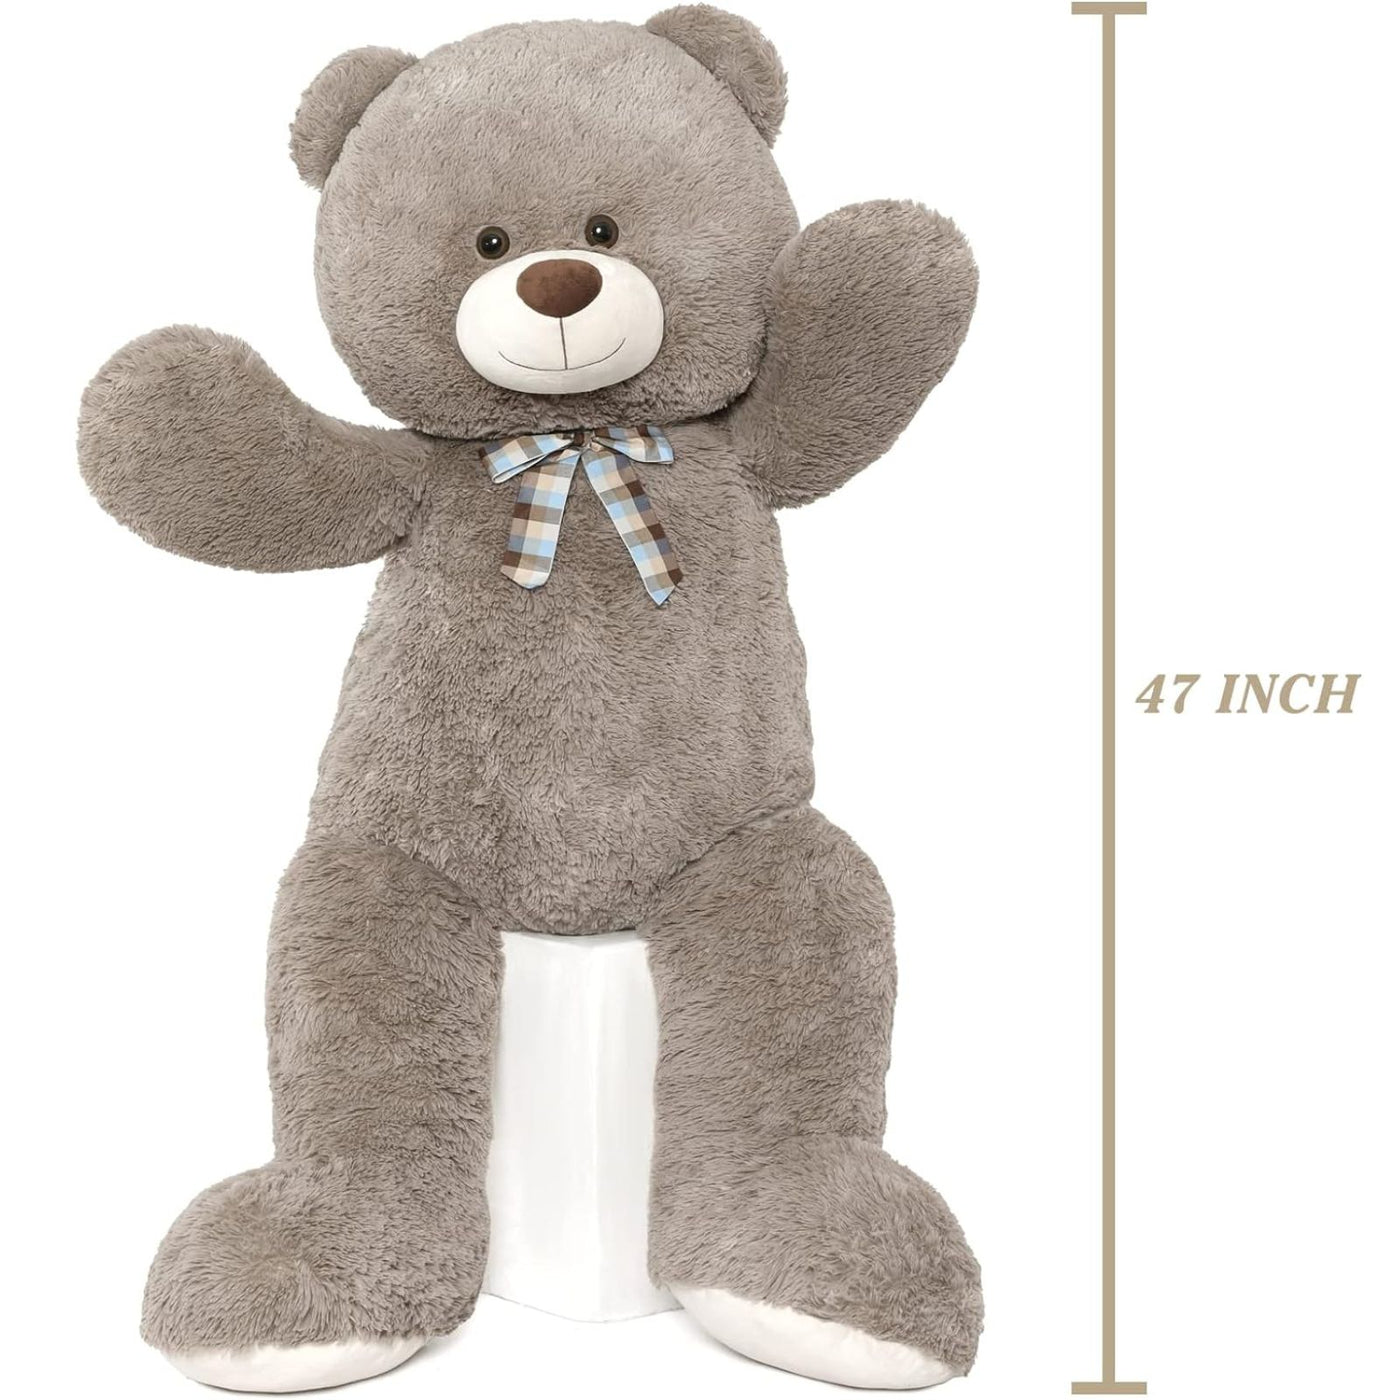 Big Teddy Bear Soft Toy, 47 Inches - MorisMos Stuffed Animals&Plush Toys